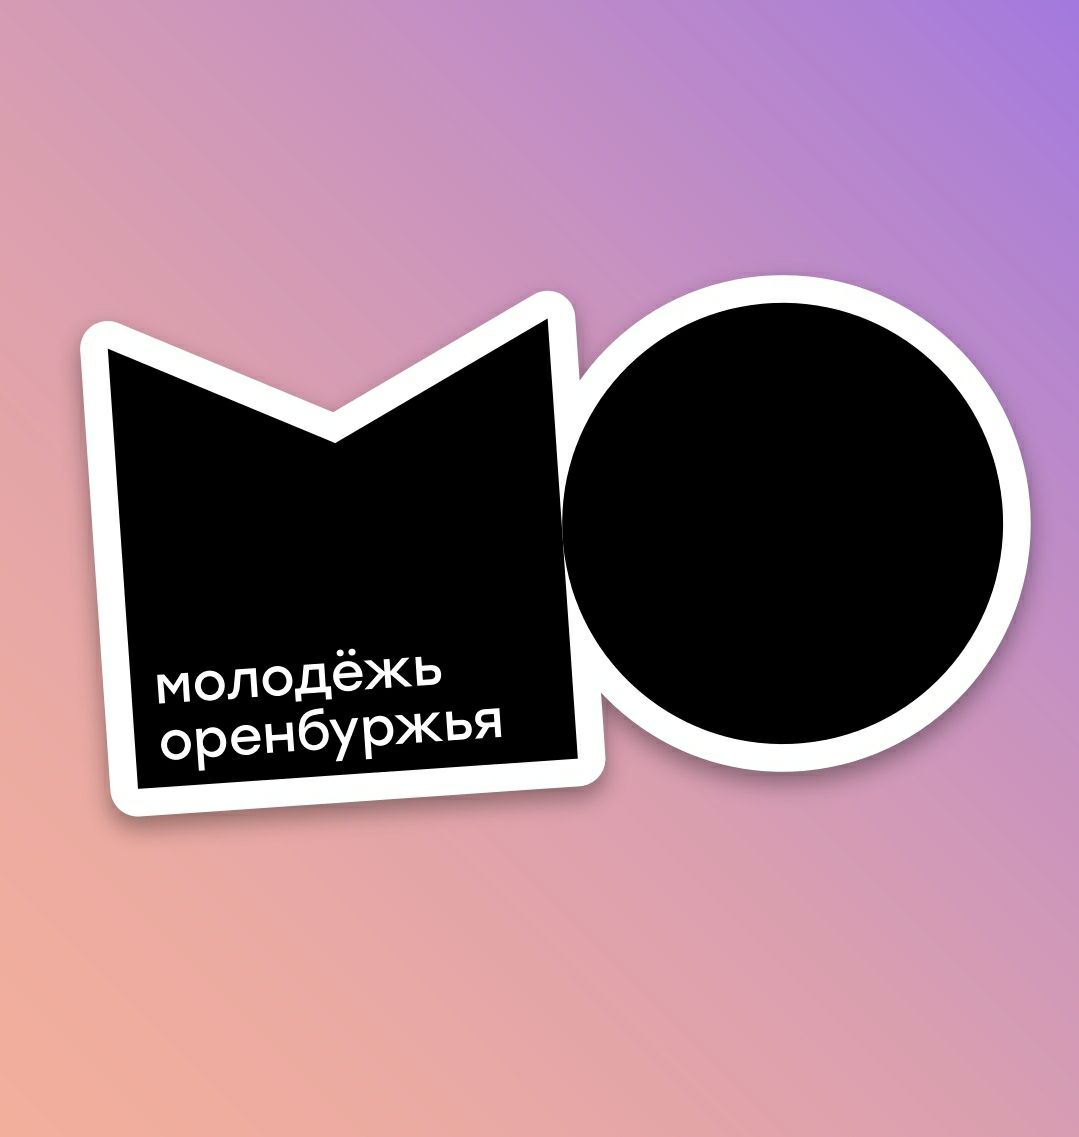 Логотип Многофункциональный молодежный центр "Молодежь Оренбуржья".